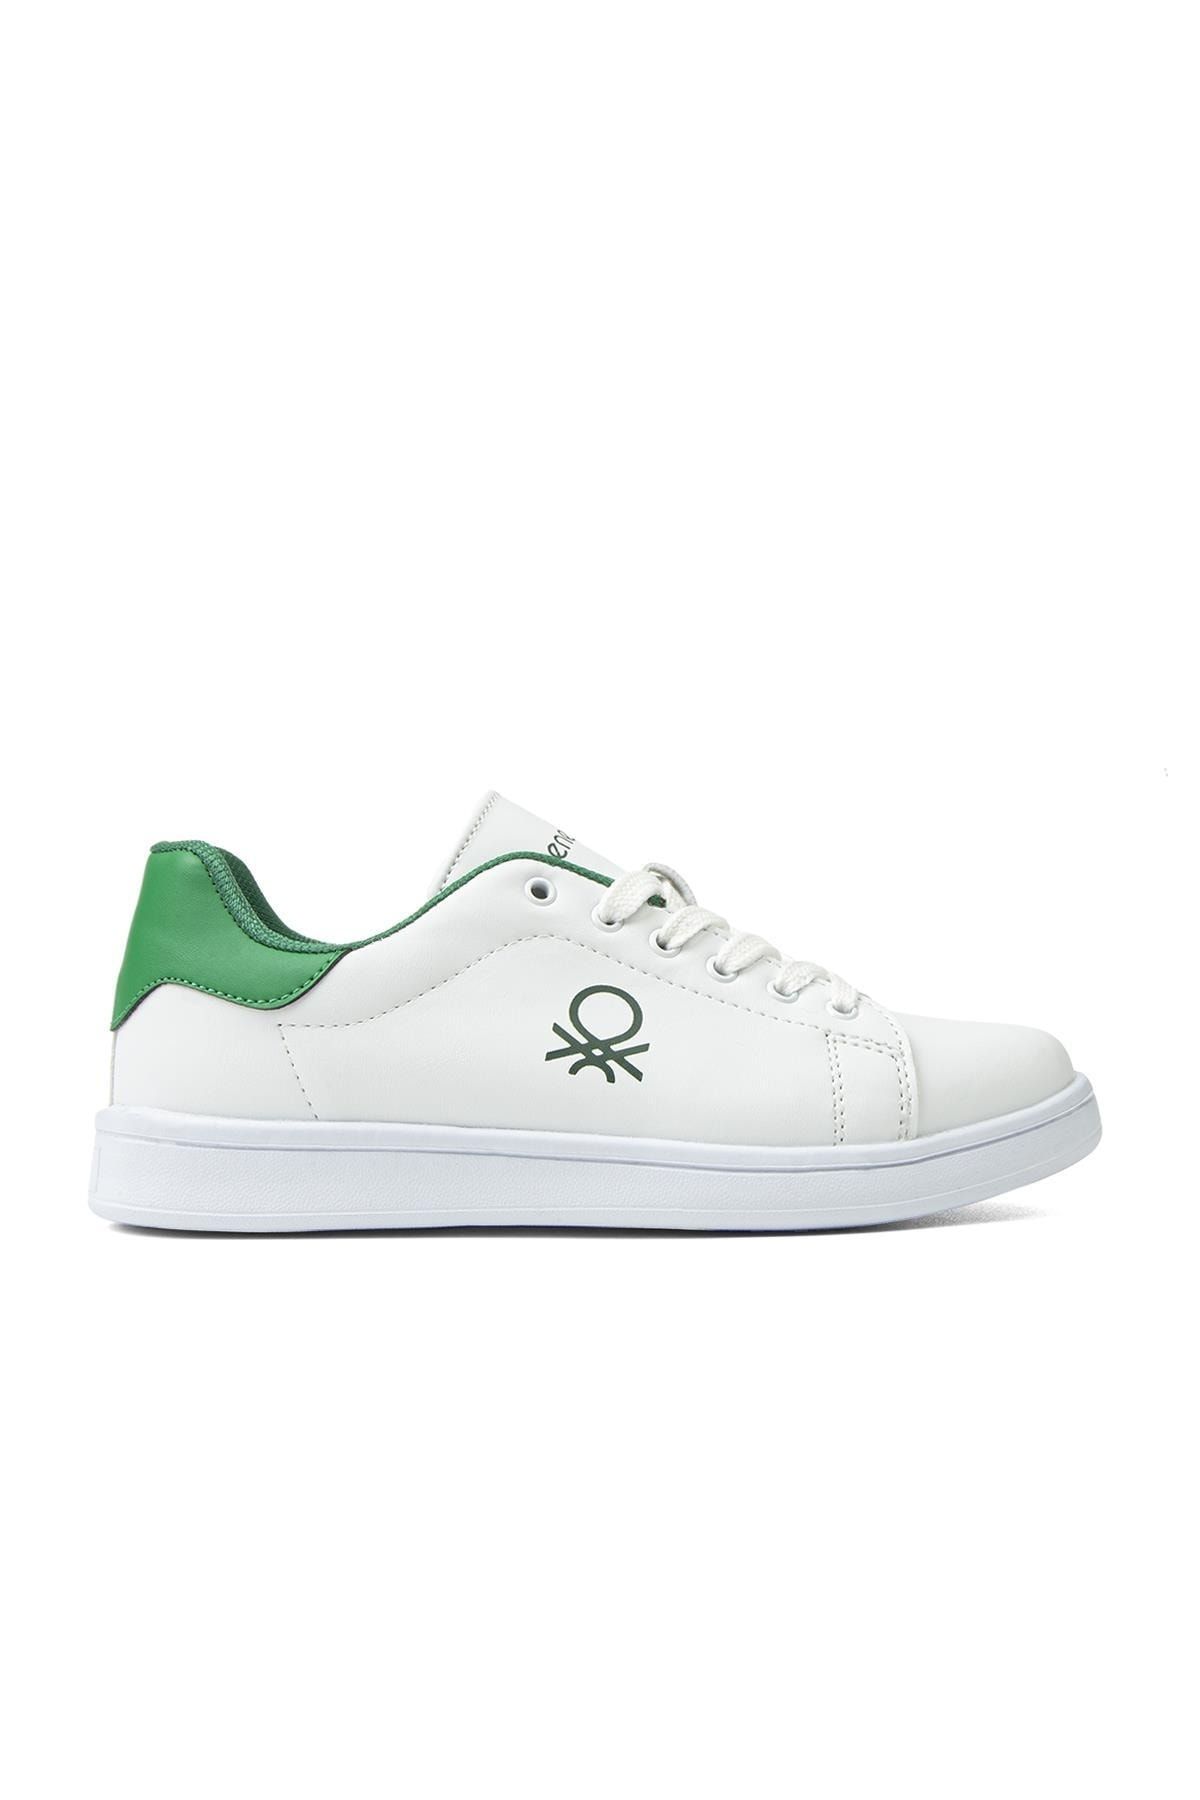 Benetton ® | Bn-30448 - 3542 Beyaz Yesil - Kadın Spor Ayakkabı